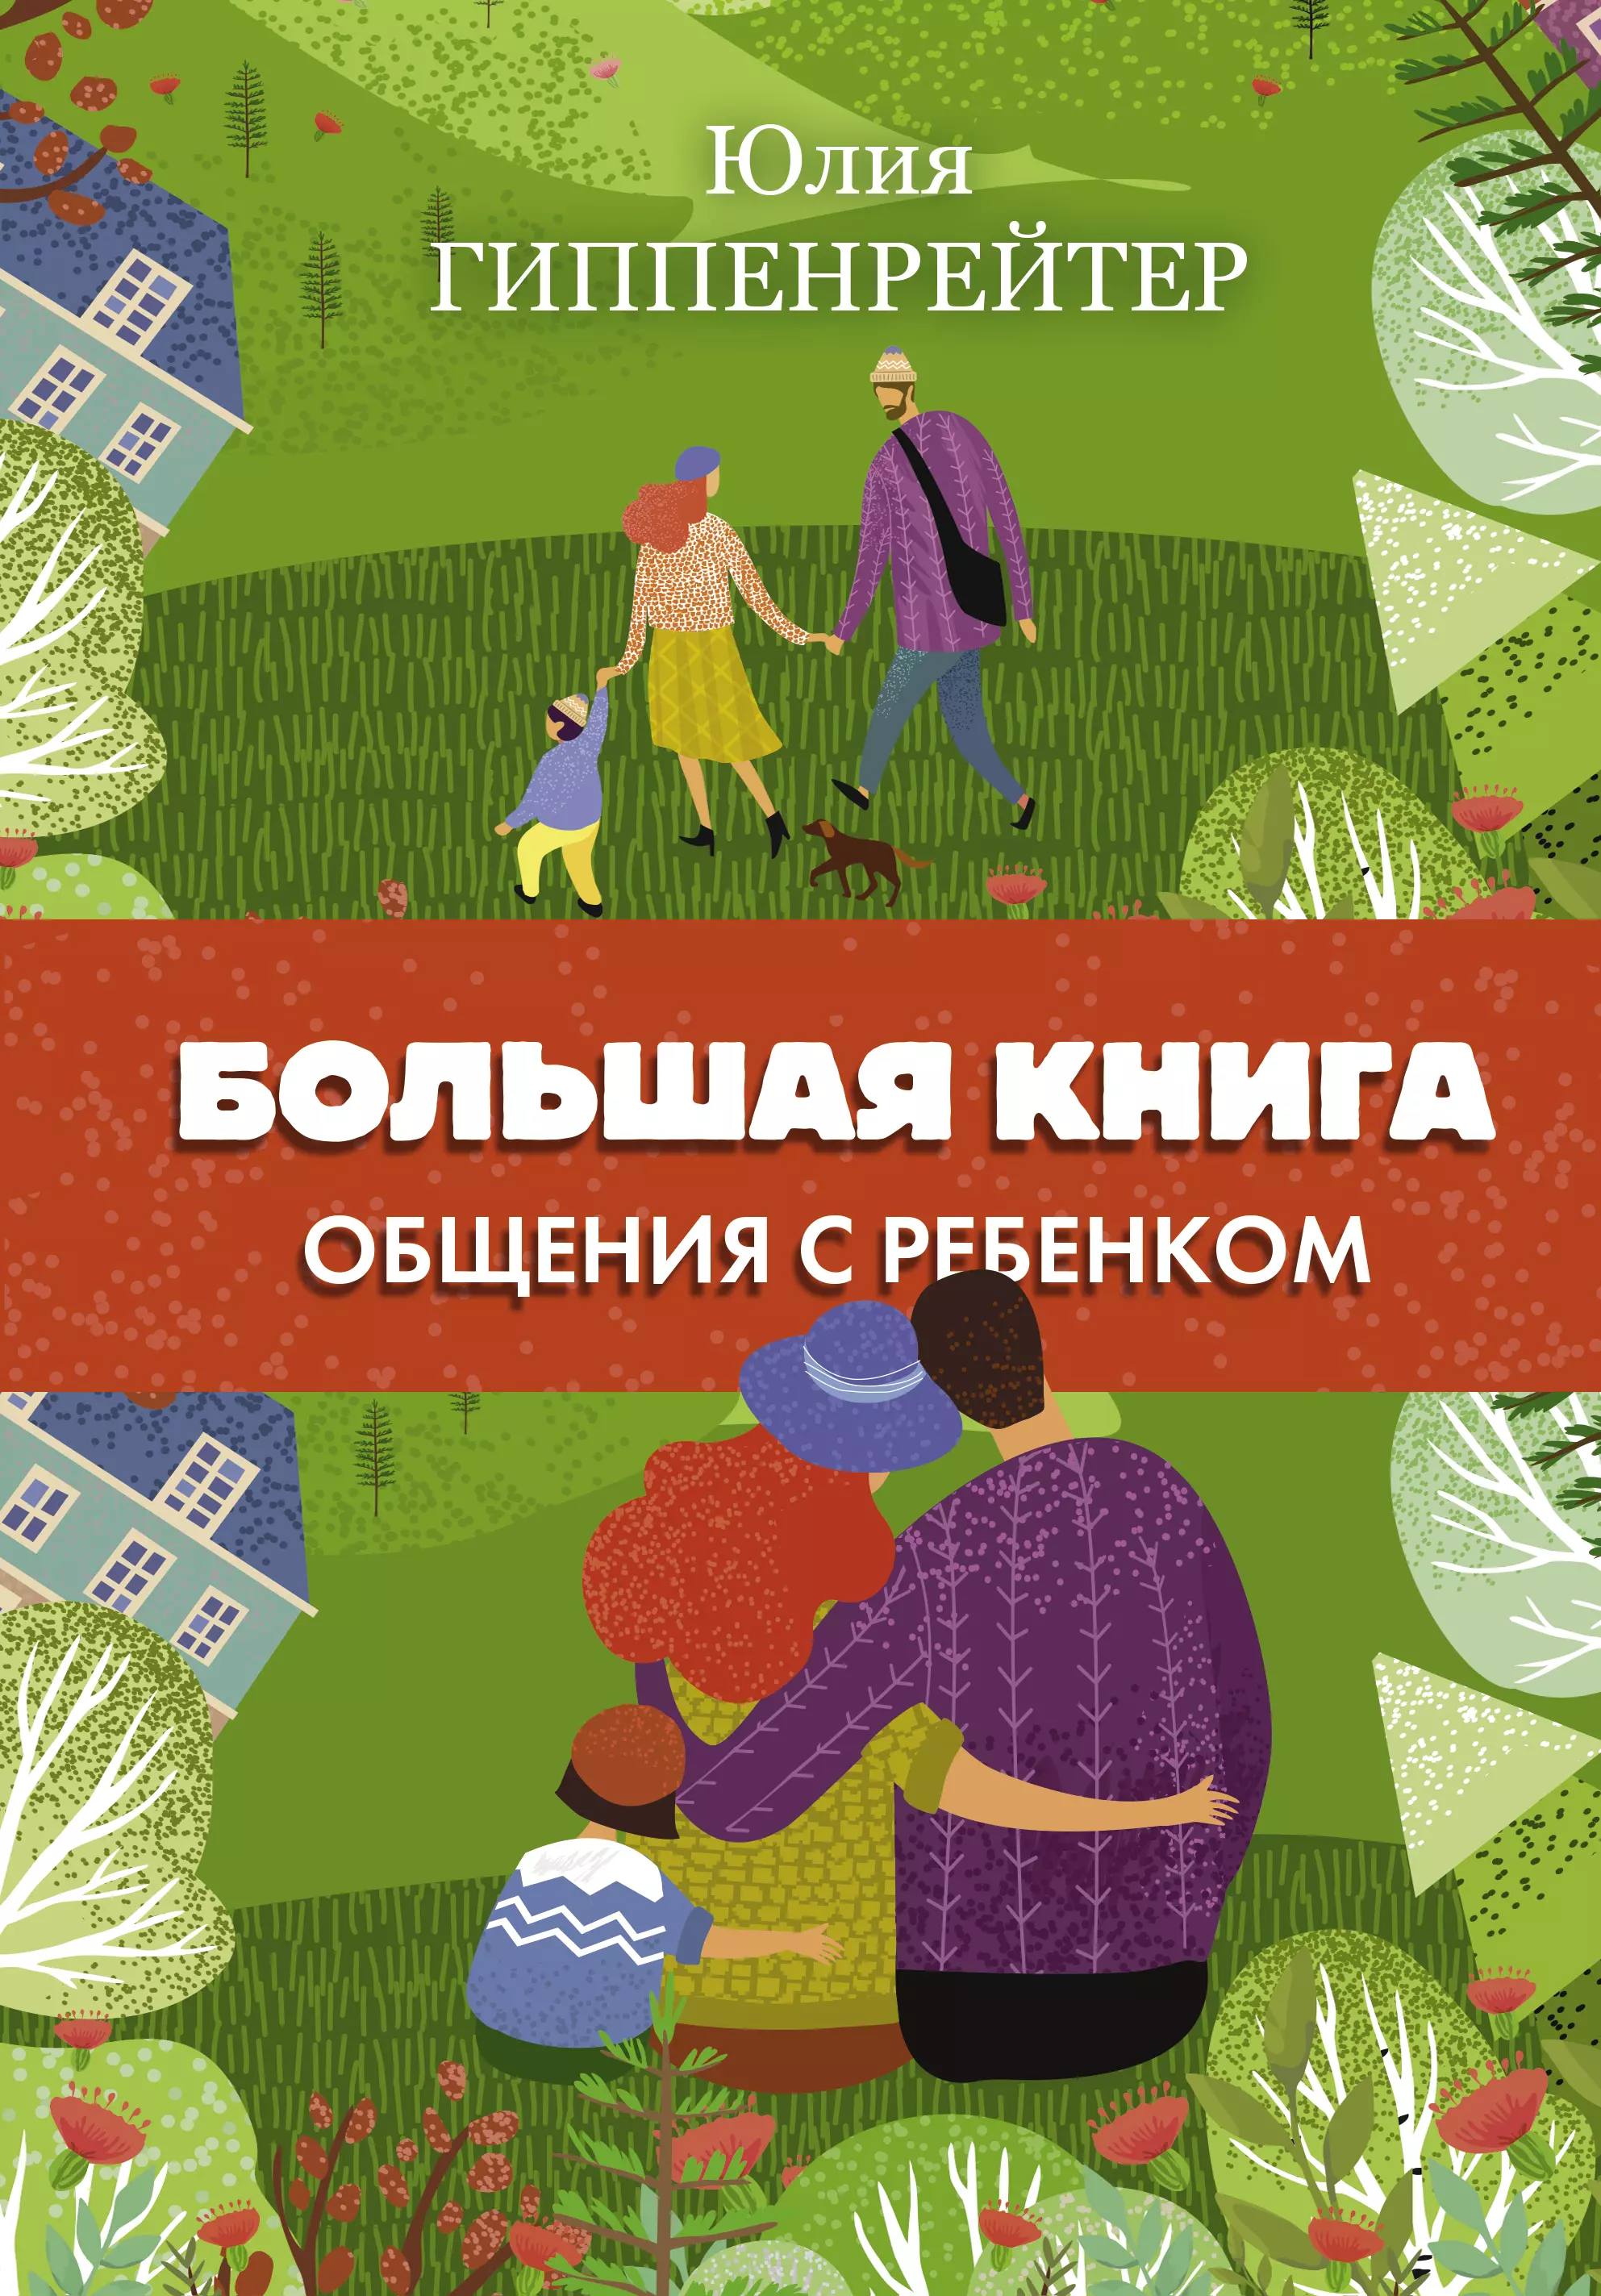 Гиппенрейтер Юлия Борисовна - Большая книга общения с ребенком